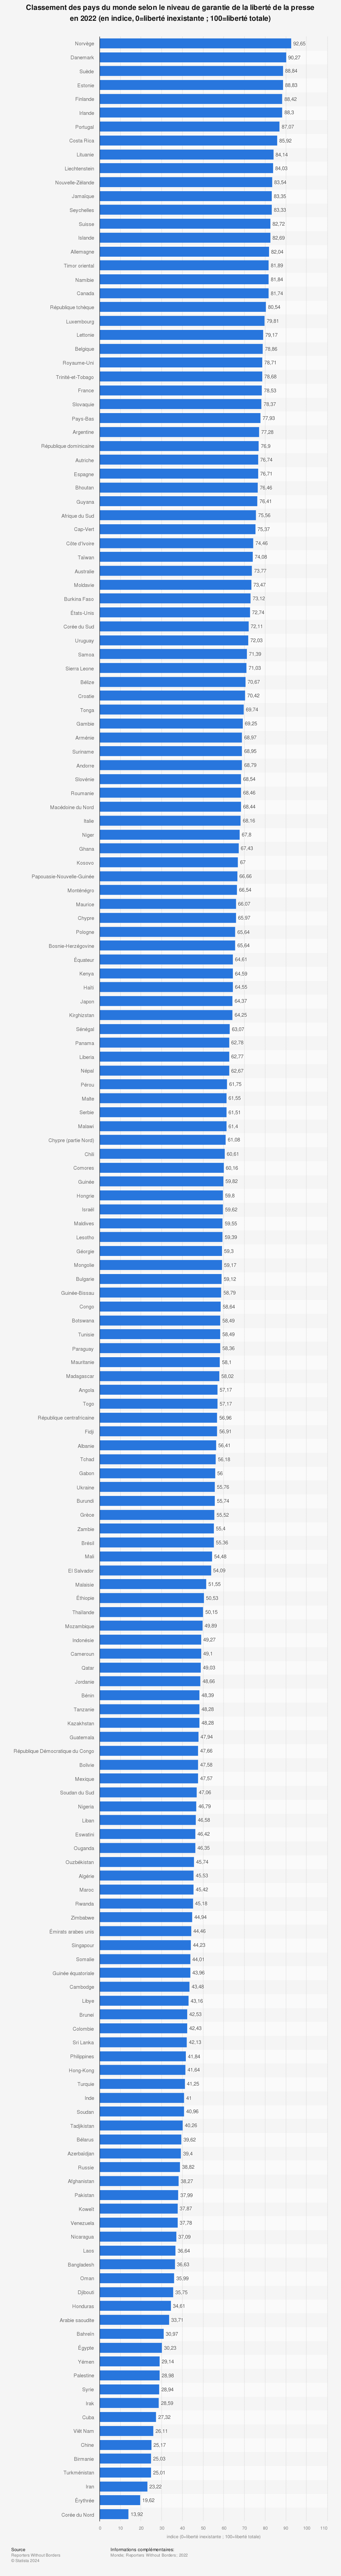 Statistique: Classement des pays du monde selon le niveau de garantie de la liberté de la presse en 2022 (en indice, 0=liberté inexistante ; 100=liberté totale) | Statista